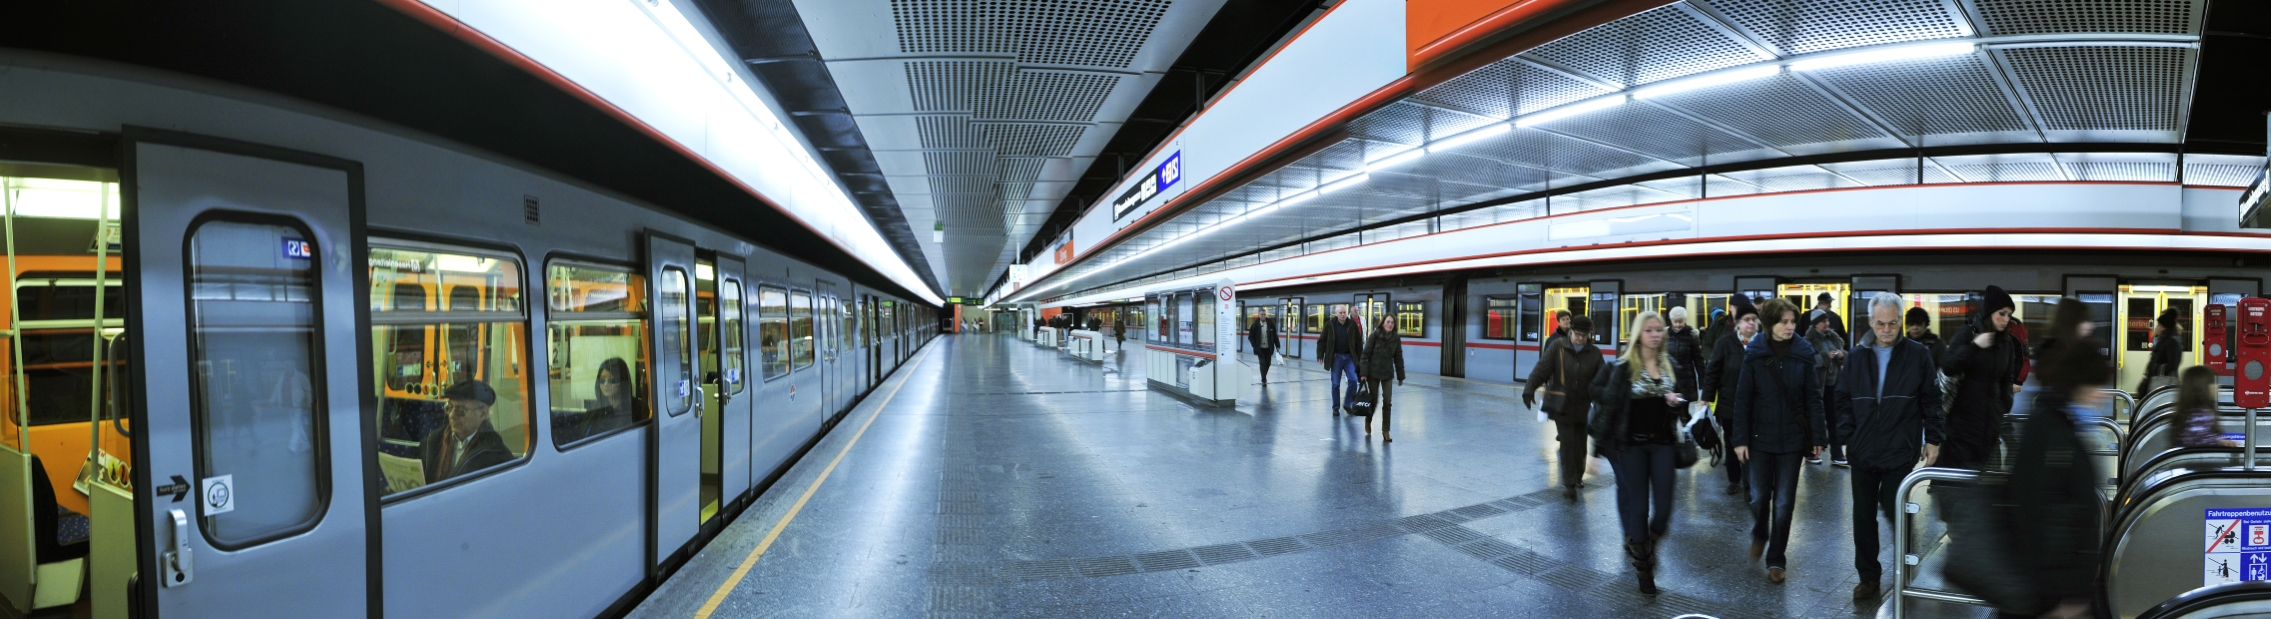 Silberpfeil der Linie U3 in der Station Simmering vor der Abfahrt. Fotomontage.